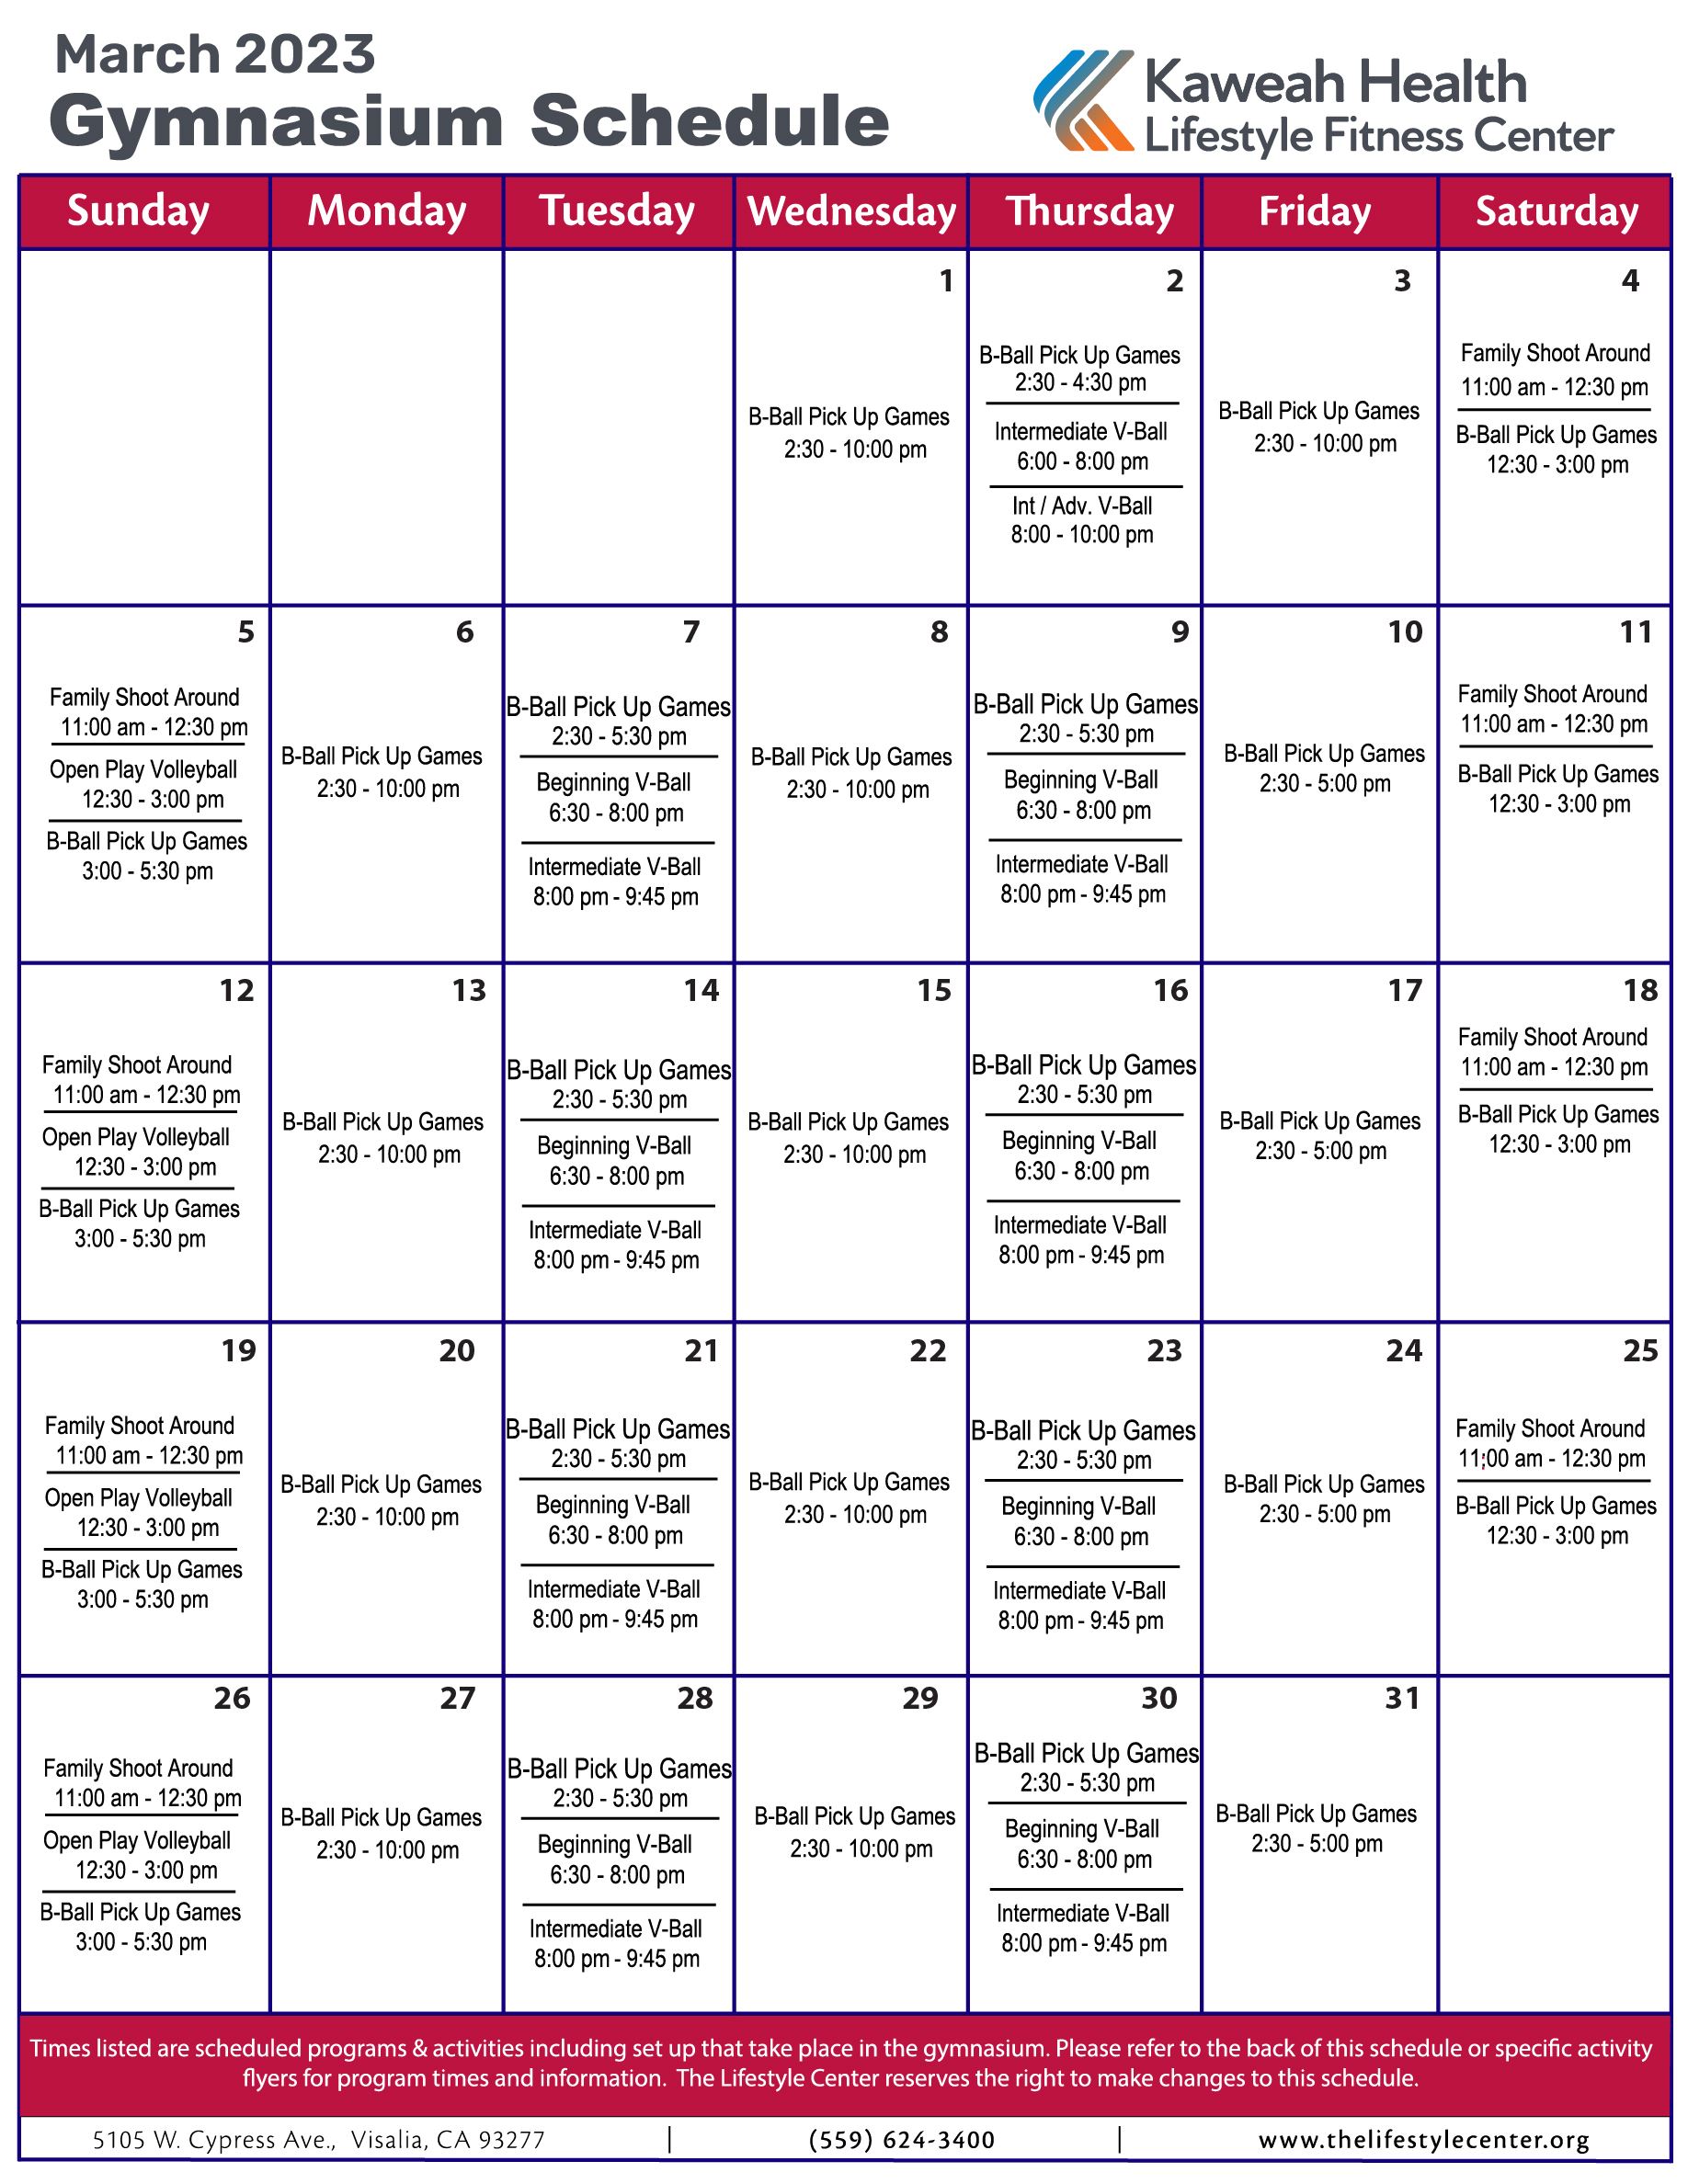 March 2023 Gymnasium schedule